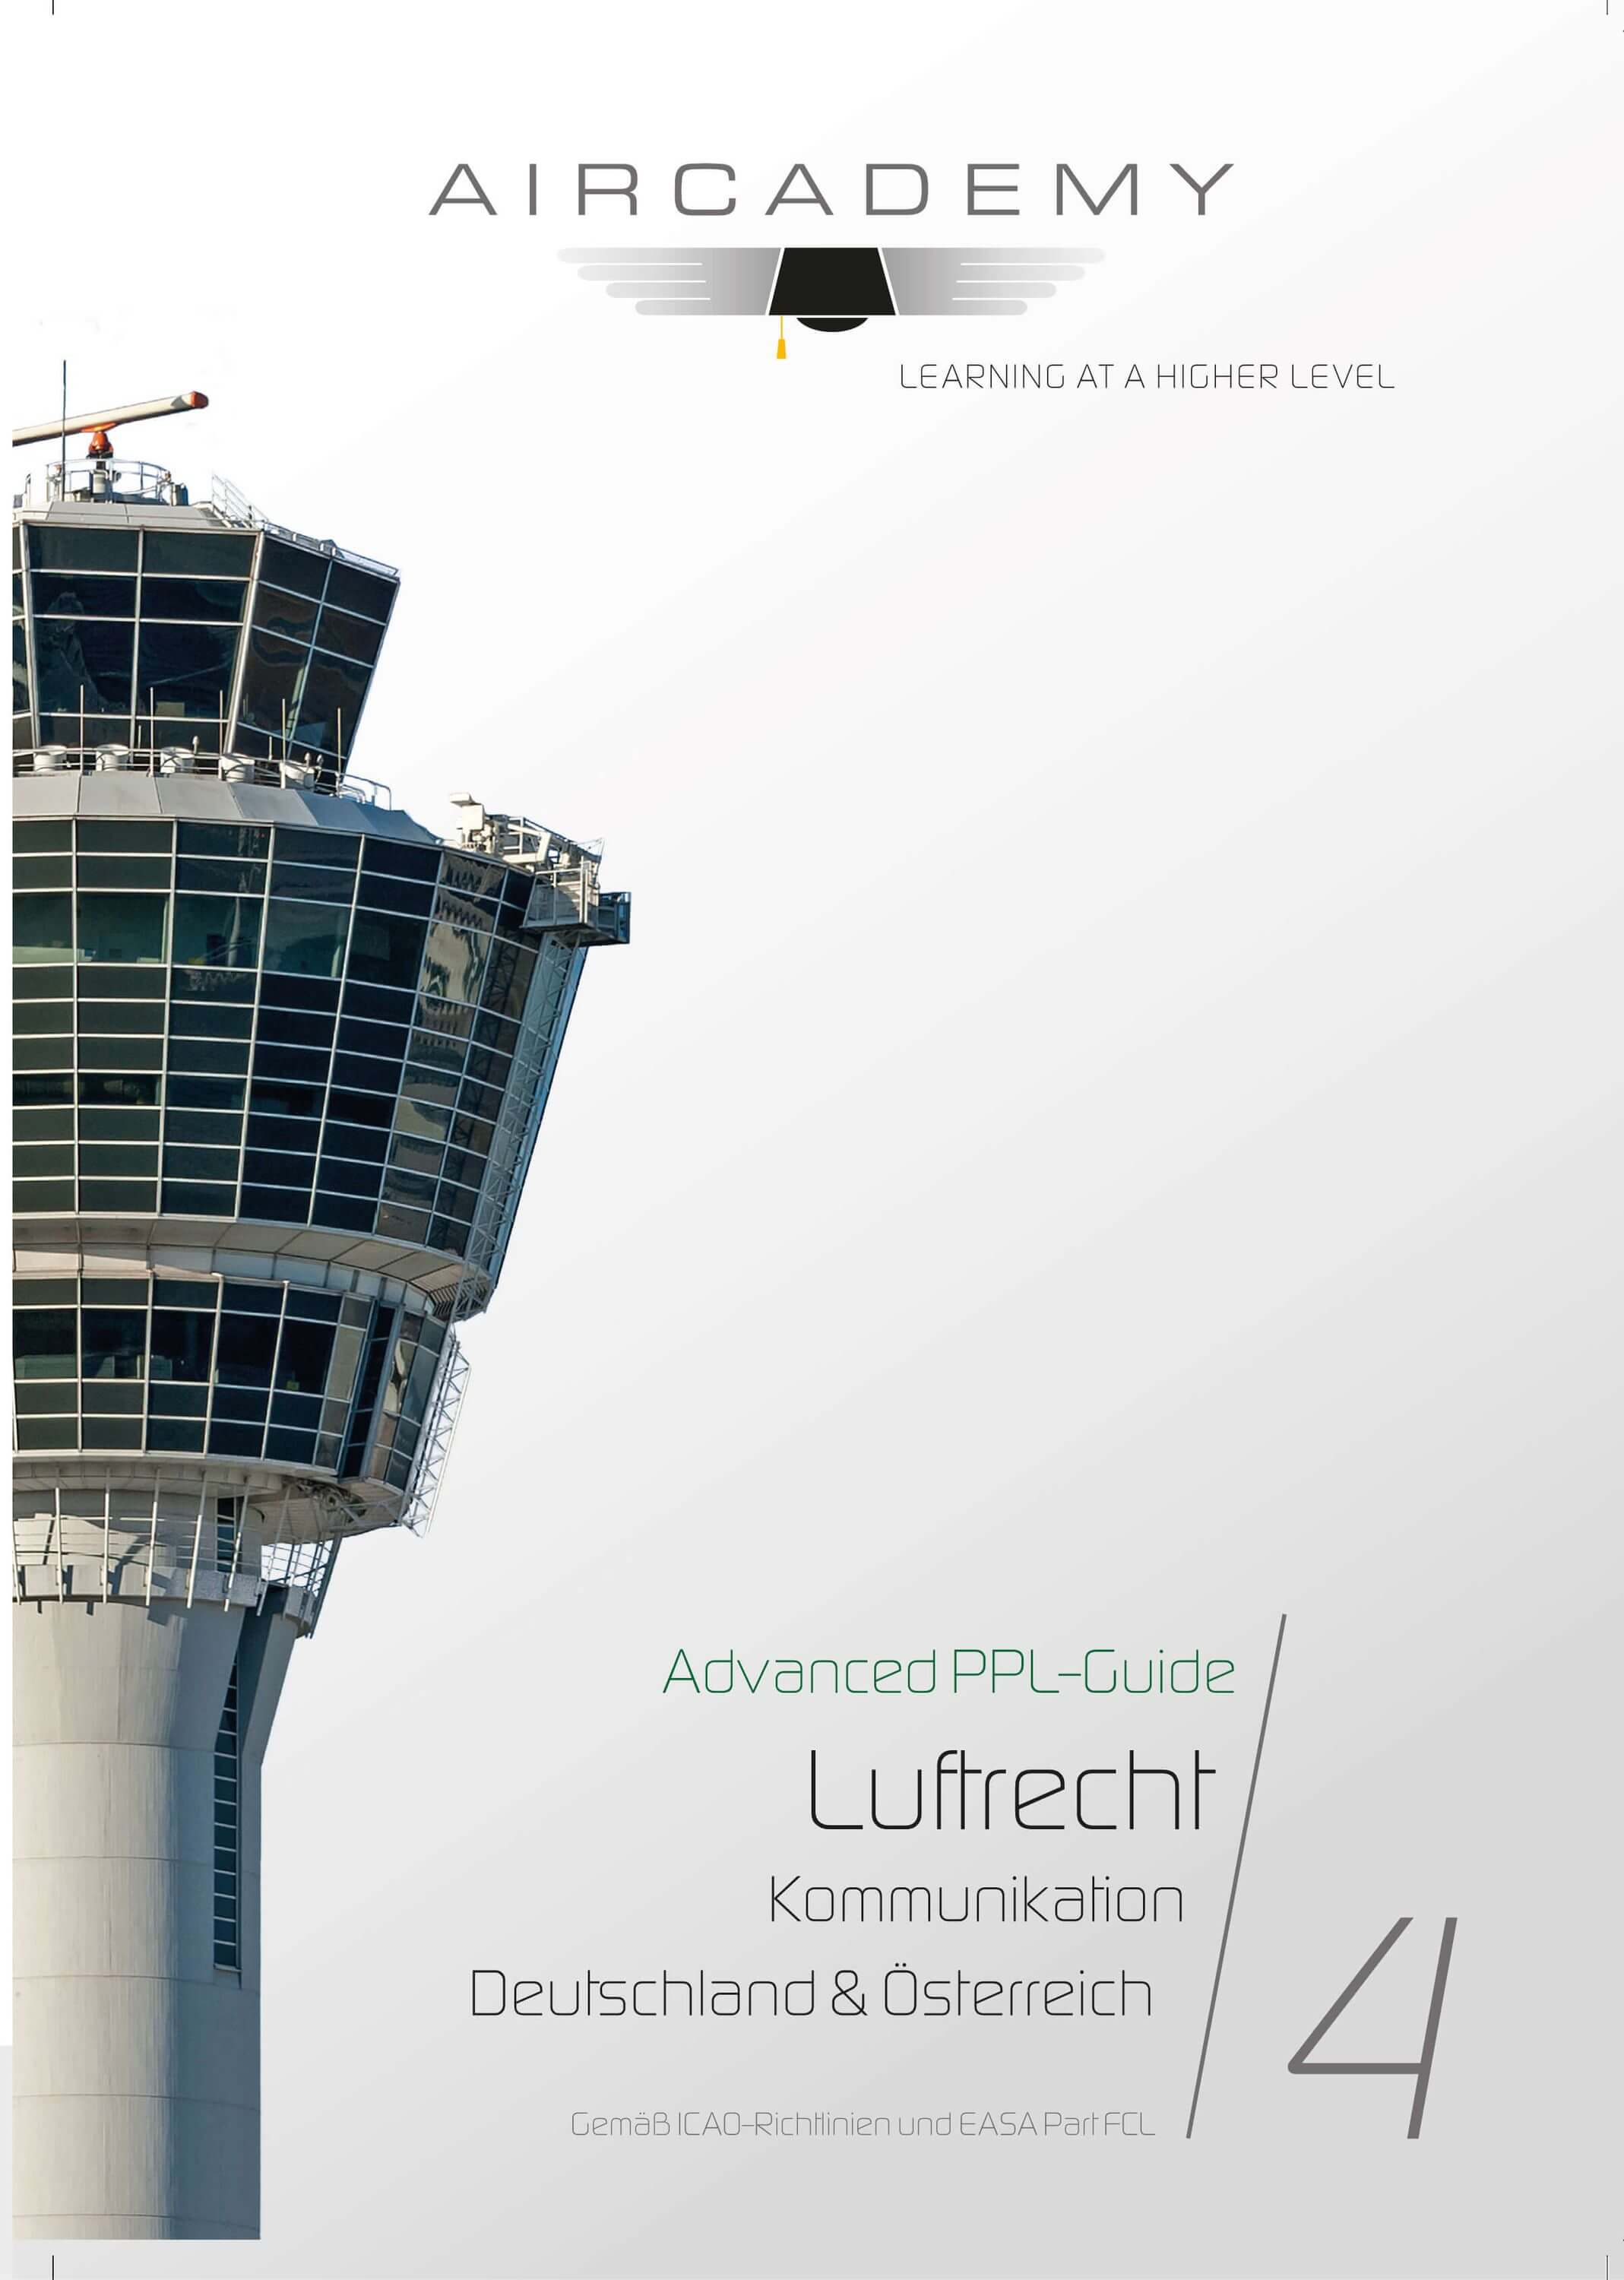 Aircademy Advanced PPL-Guide: Luftrecht Deutschland & Österreich Band 4